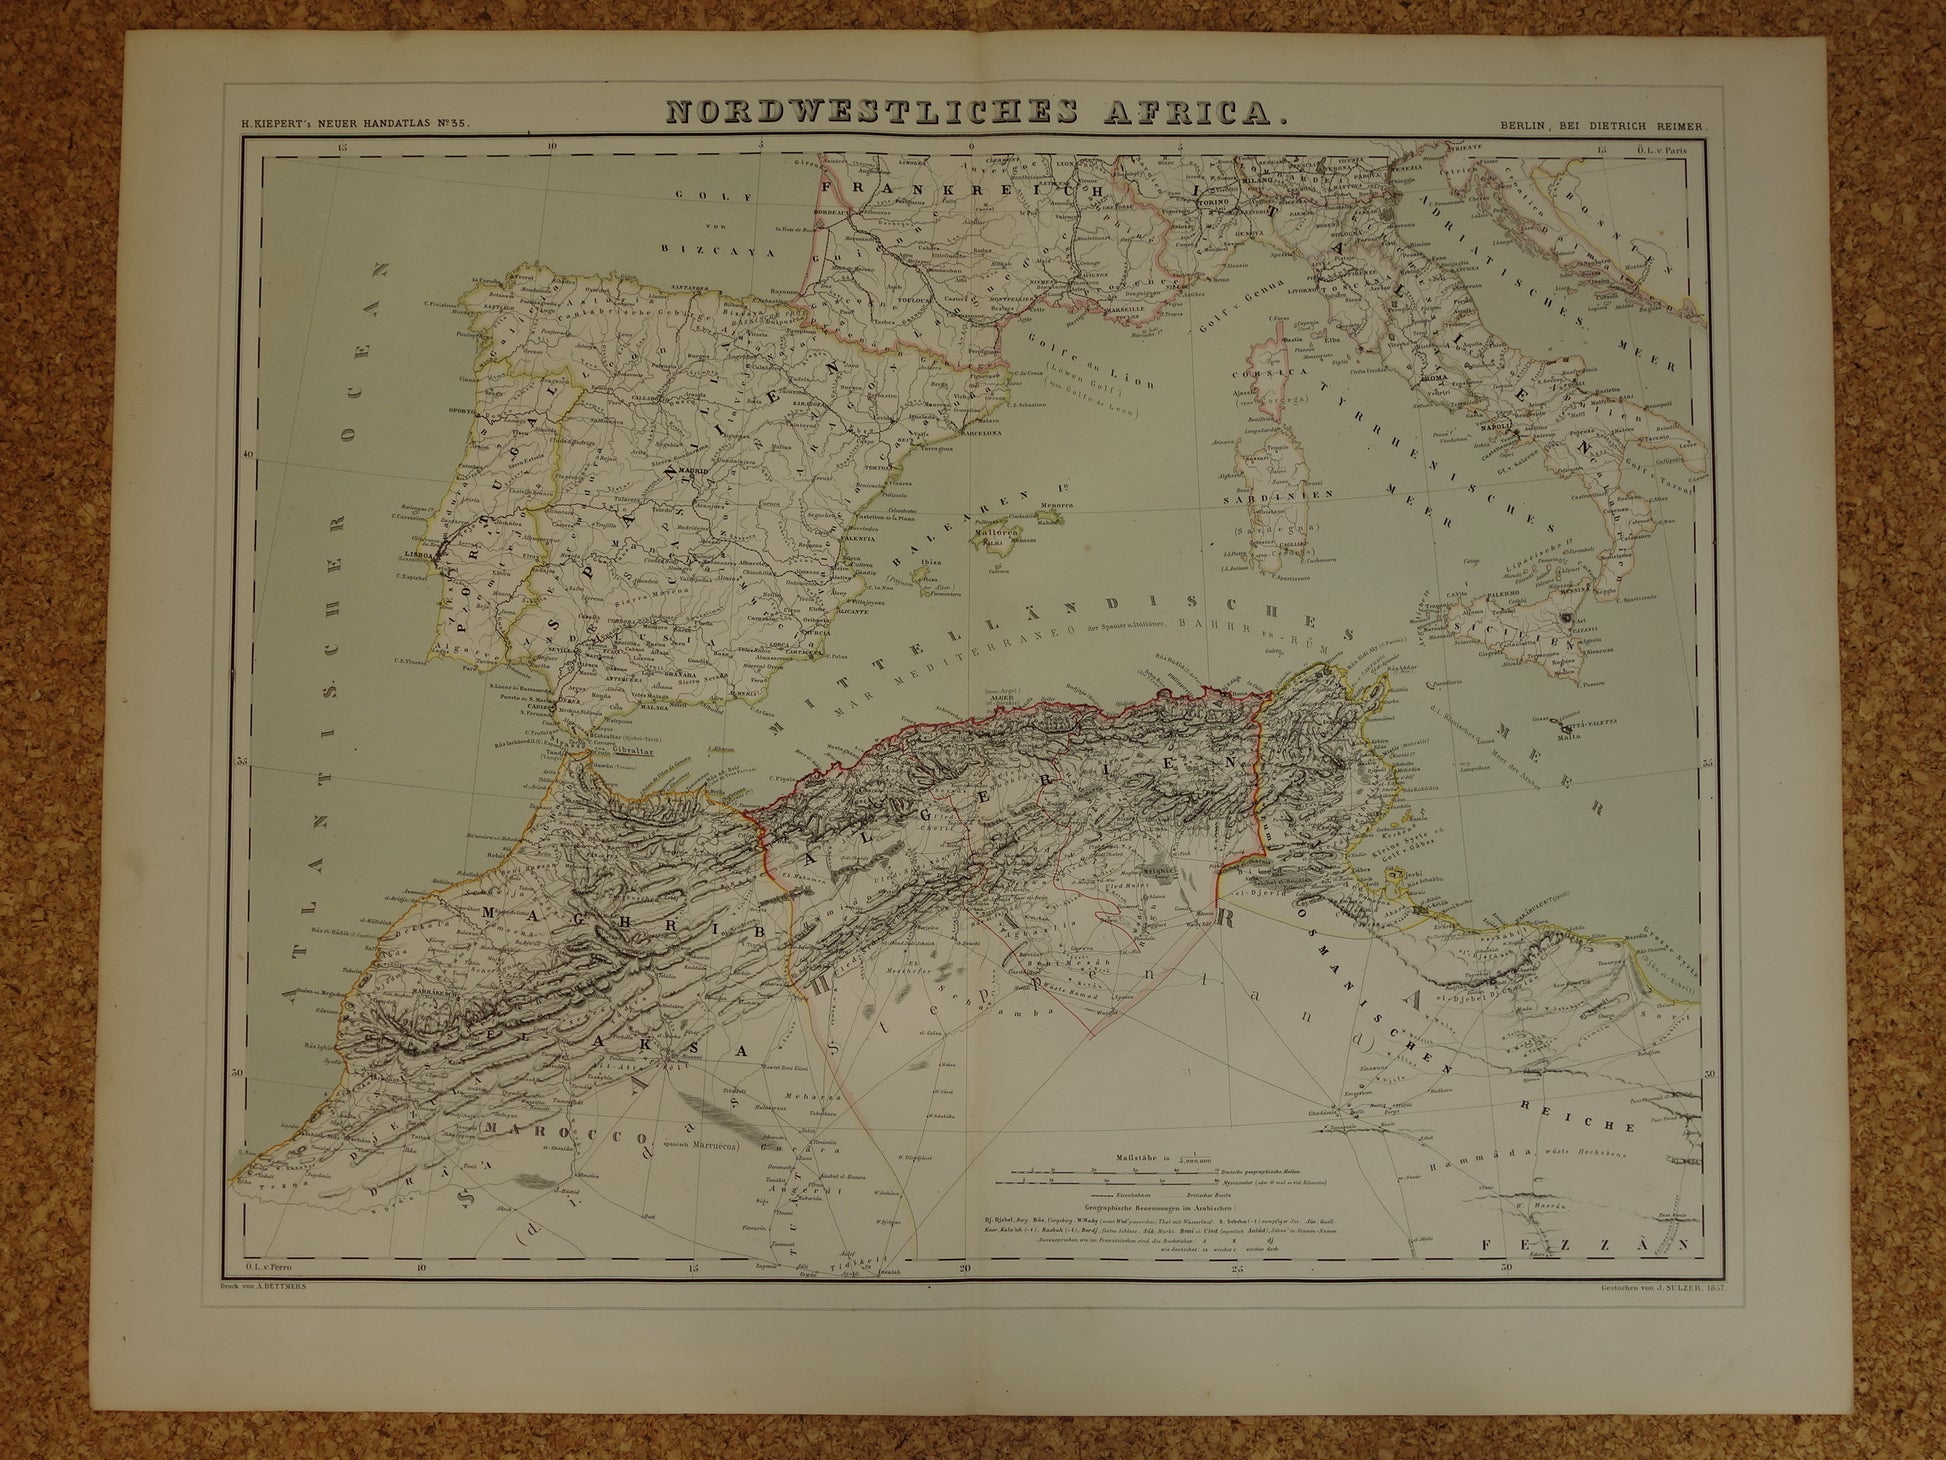 Oude kaart van westelijk Middellandse Zeegebied originele antieke landkaart van Marokko Tunesië Algerije Spanje Corisca met jaartal grote historische kaarten